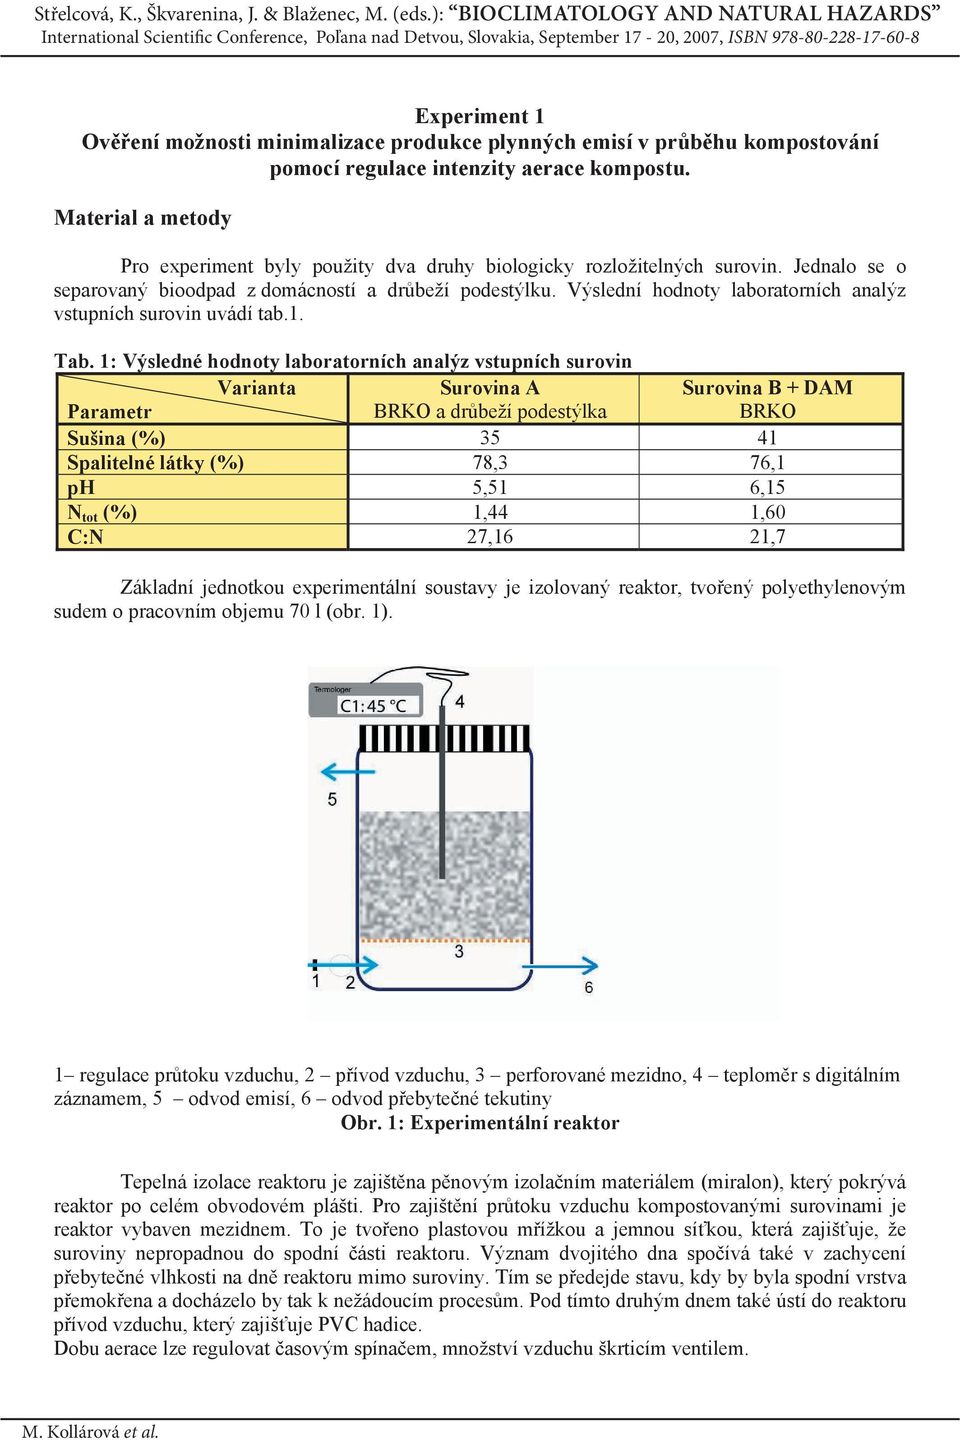 Výslední hodnoty laboratorních analýz vstupních surovin uvádí tab.1. Tab.